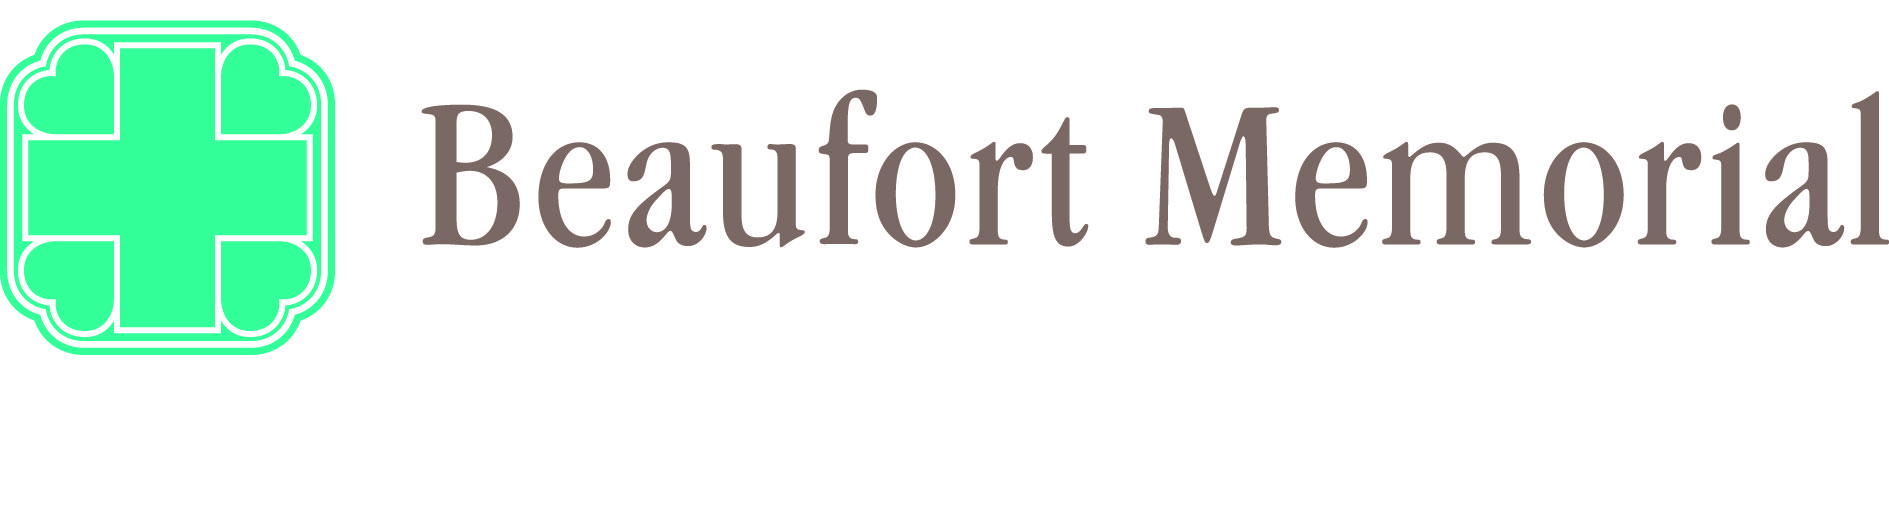 Beaufort Memorial logo